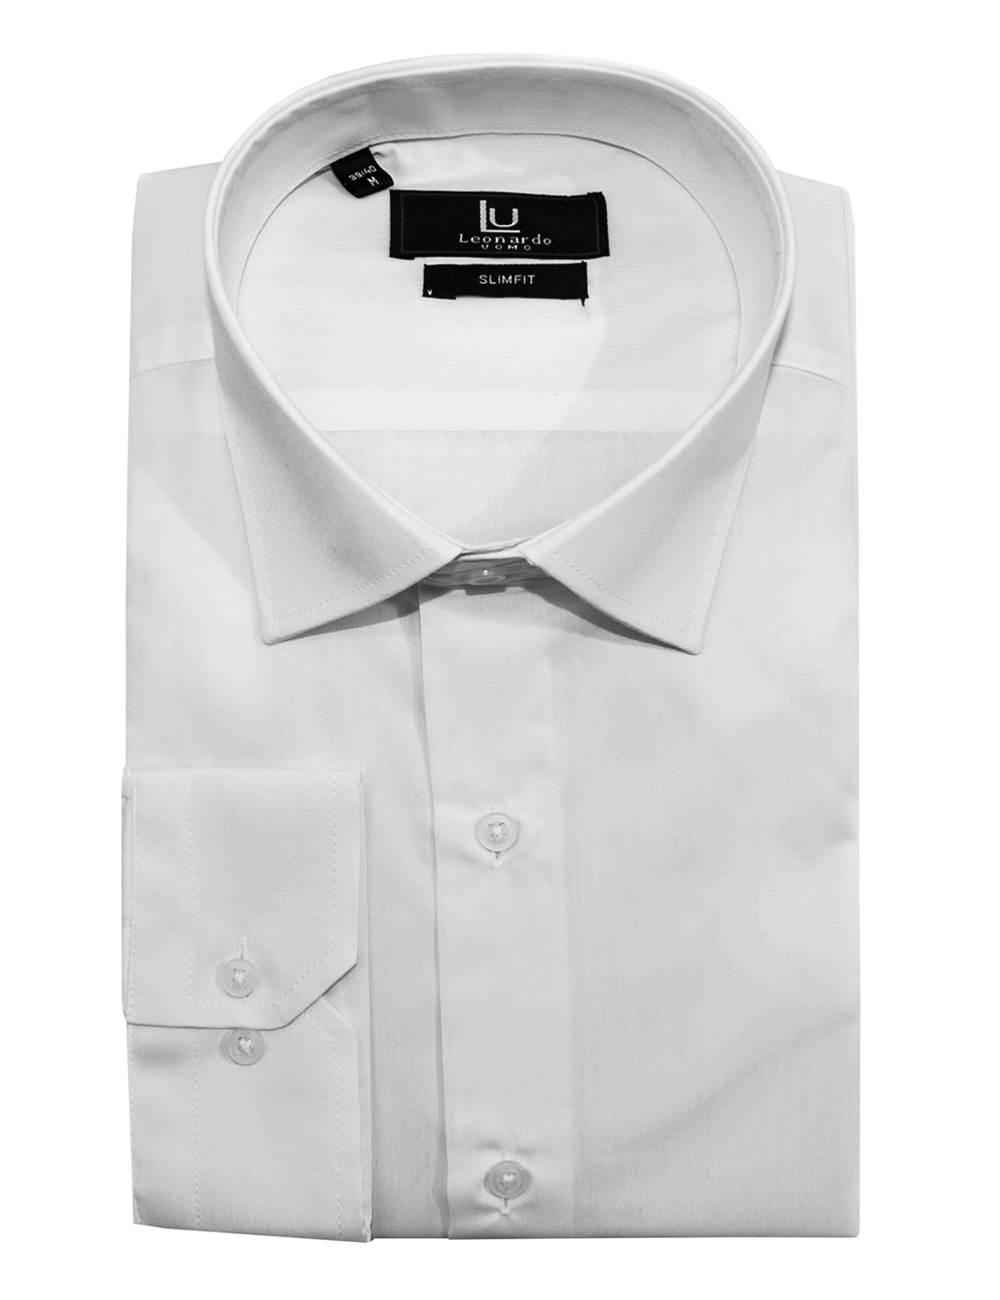 Λευκό βαμβακερό μακρυμάνικο πουκάμισο LEONARDO UOMO